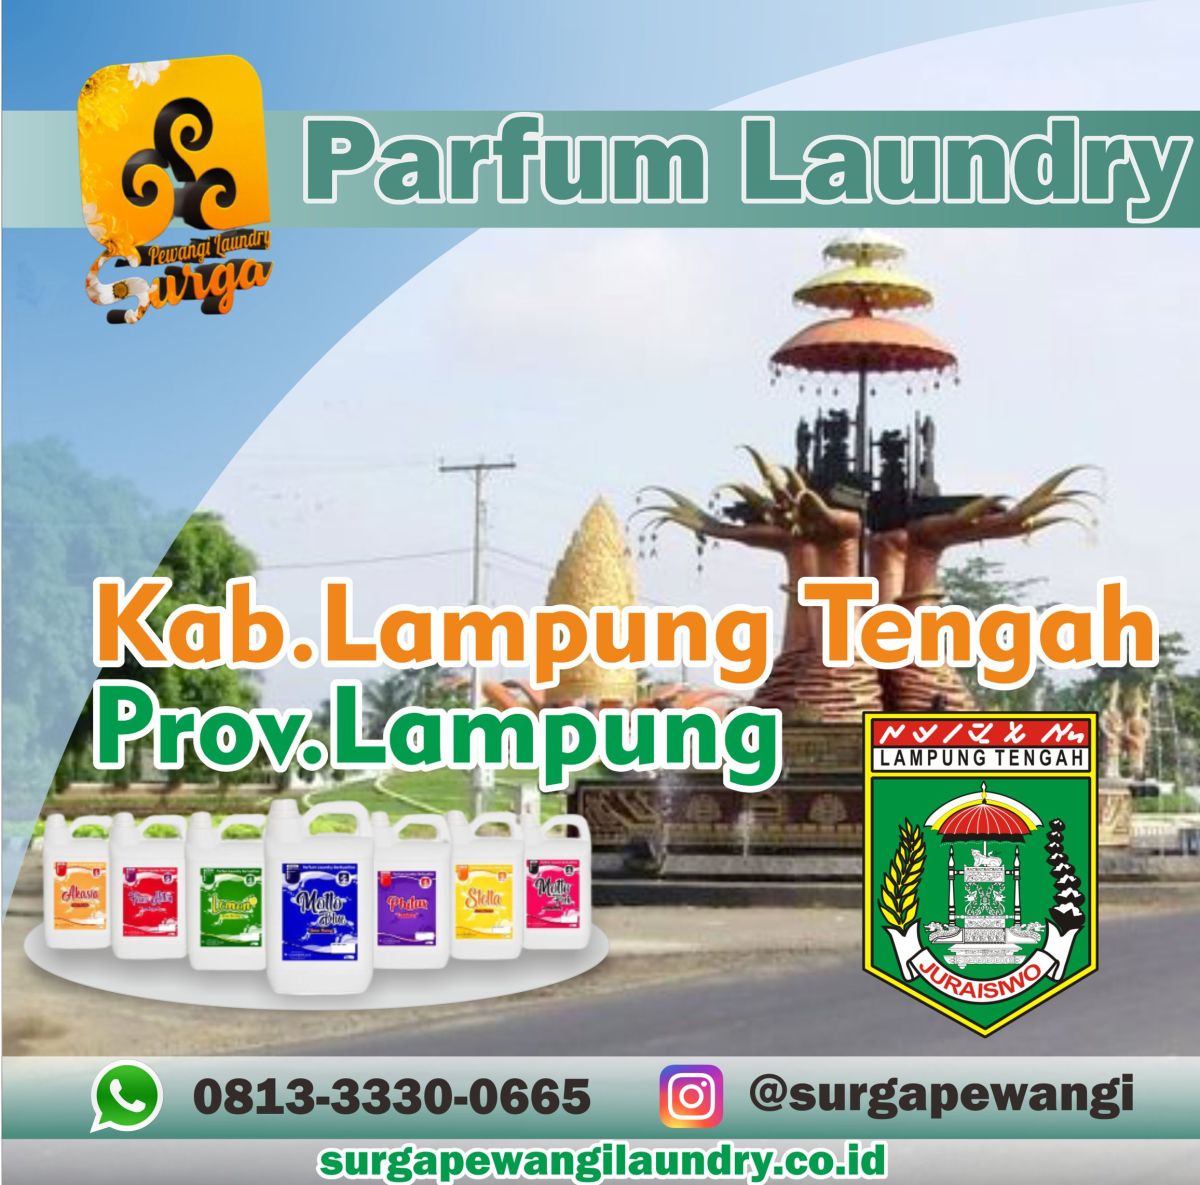 Parfum Laundry Kabupaten Lampung Tengah, Prov Lampung